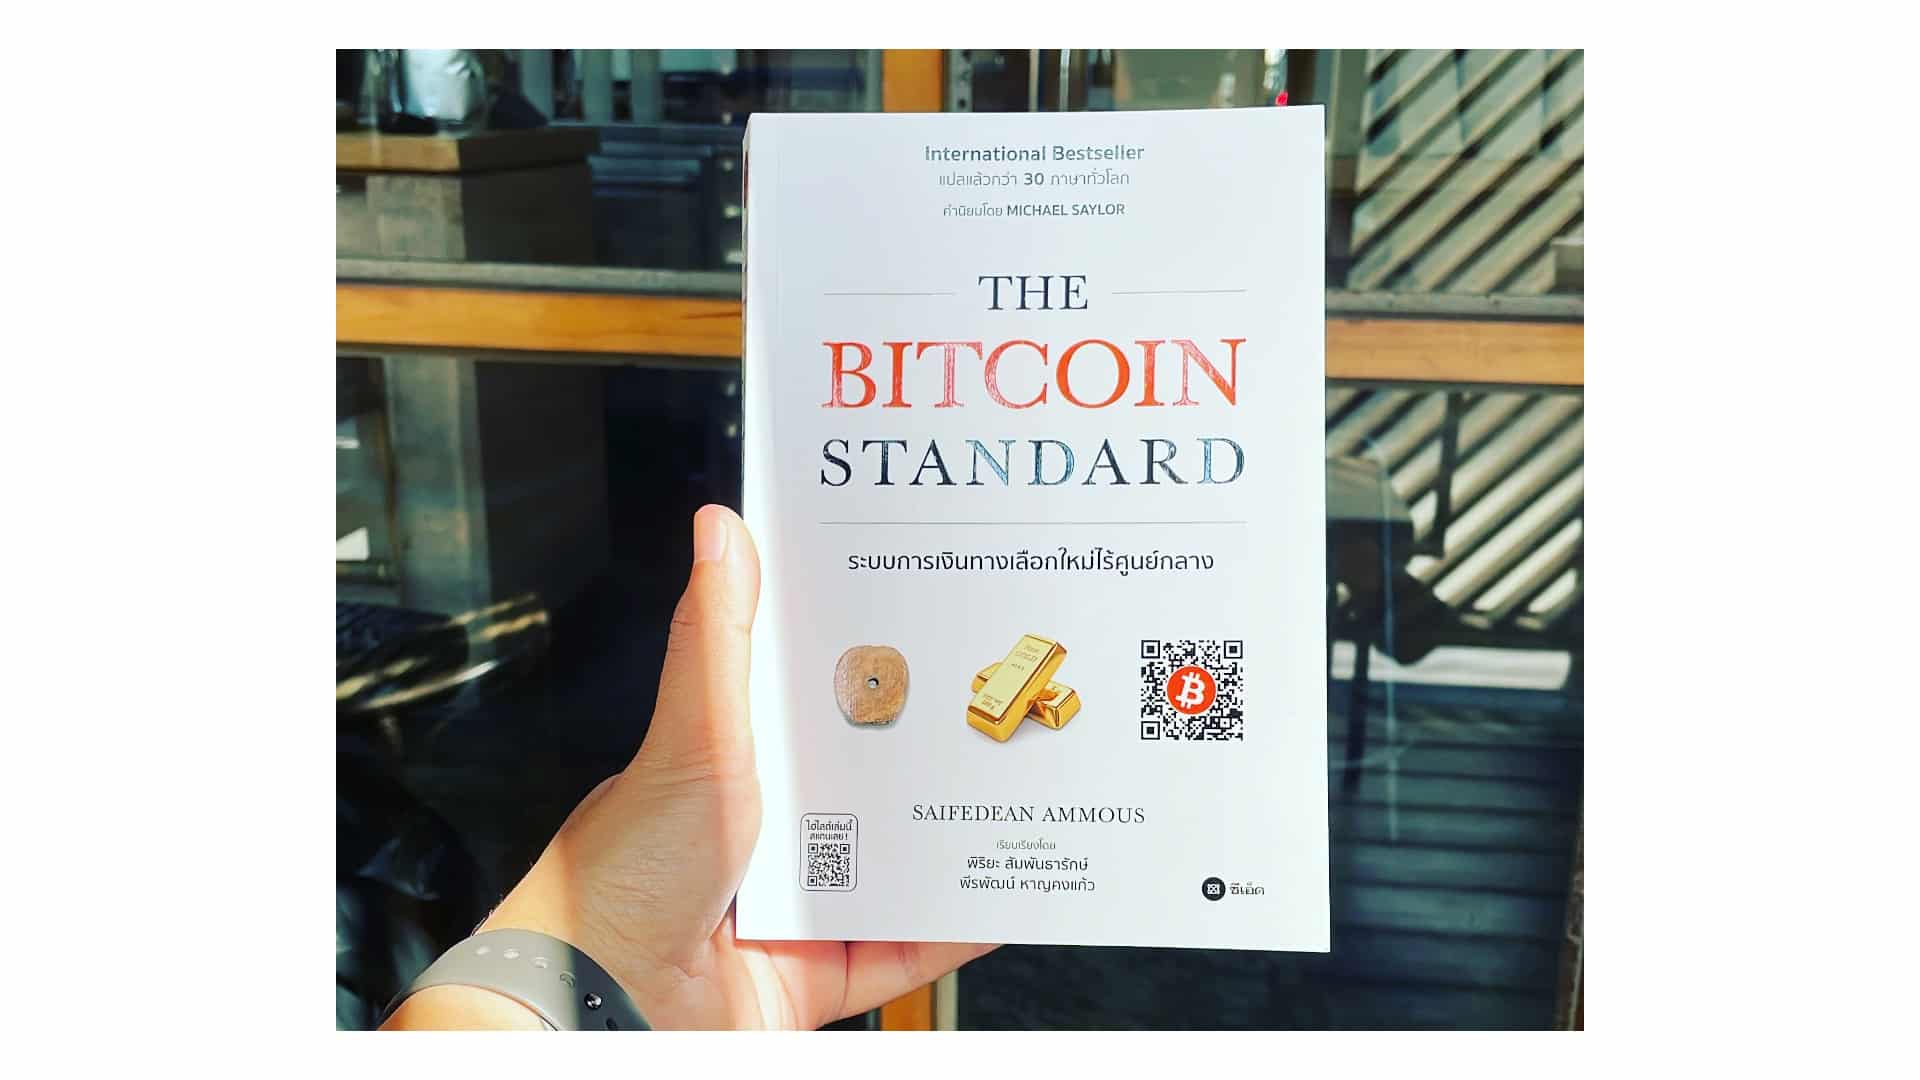 สรุปหนังสือ The Bitcoin Standard บิทคอยน์ ระบบการเงินทางเลือกใหม่ไร้ศูนย์กลาง สำนักพิมพ์ ซีเอ็ด พิริยะ สัมพันธารักษ์ พีรพัฒน์ หาญคงแก้ว